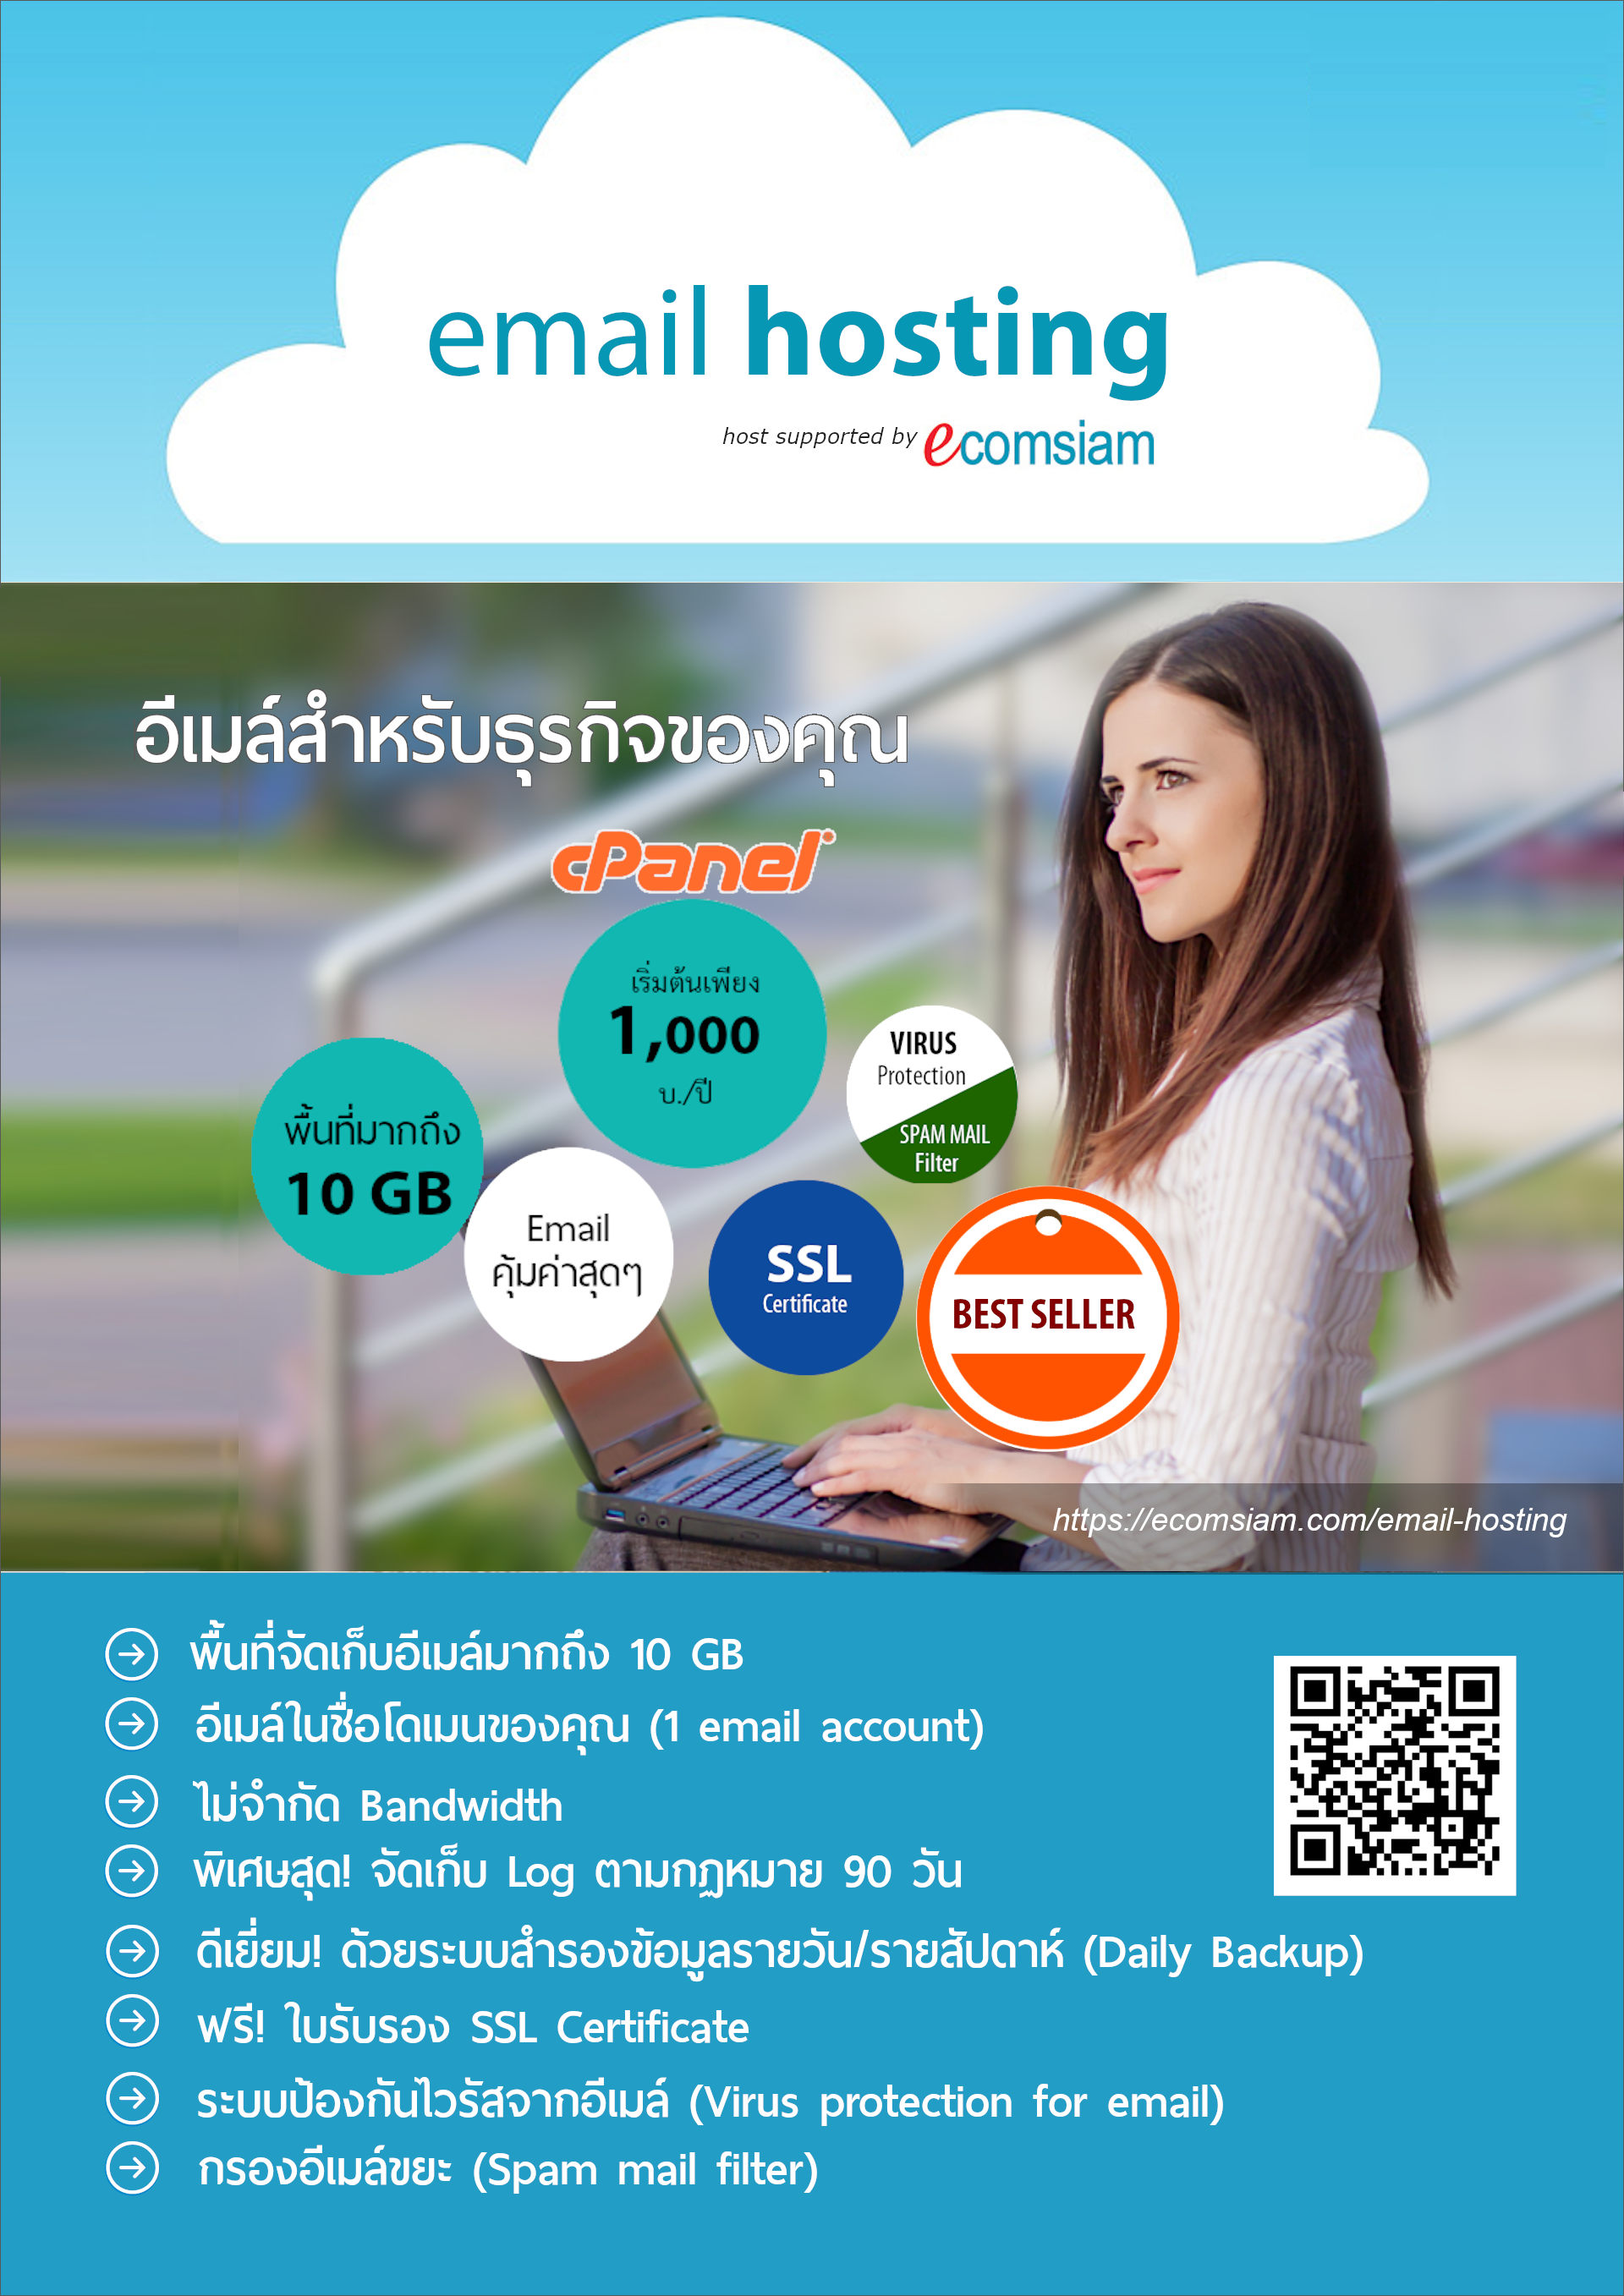 email-hosting-thai-brochure-p1.jpg?1619681465242